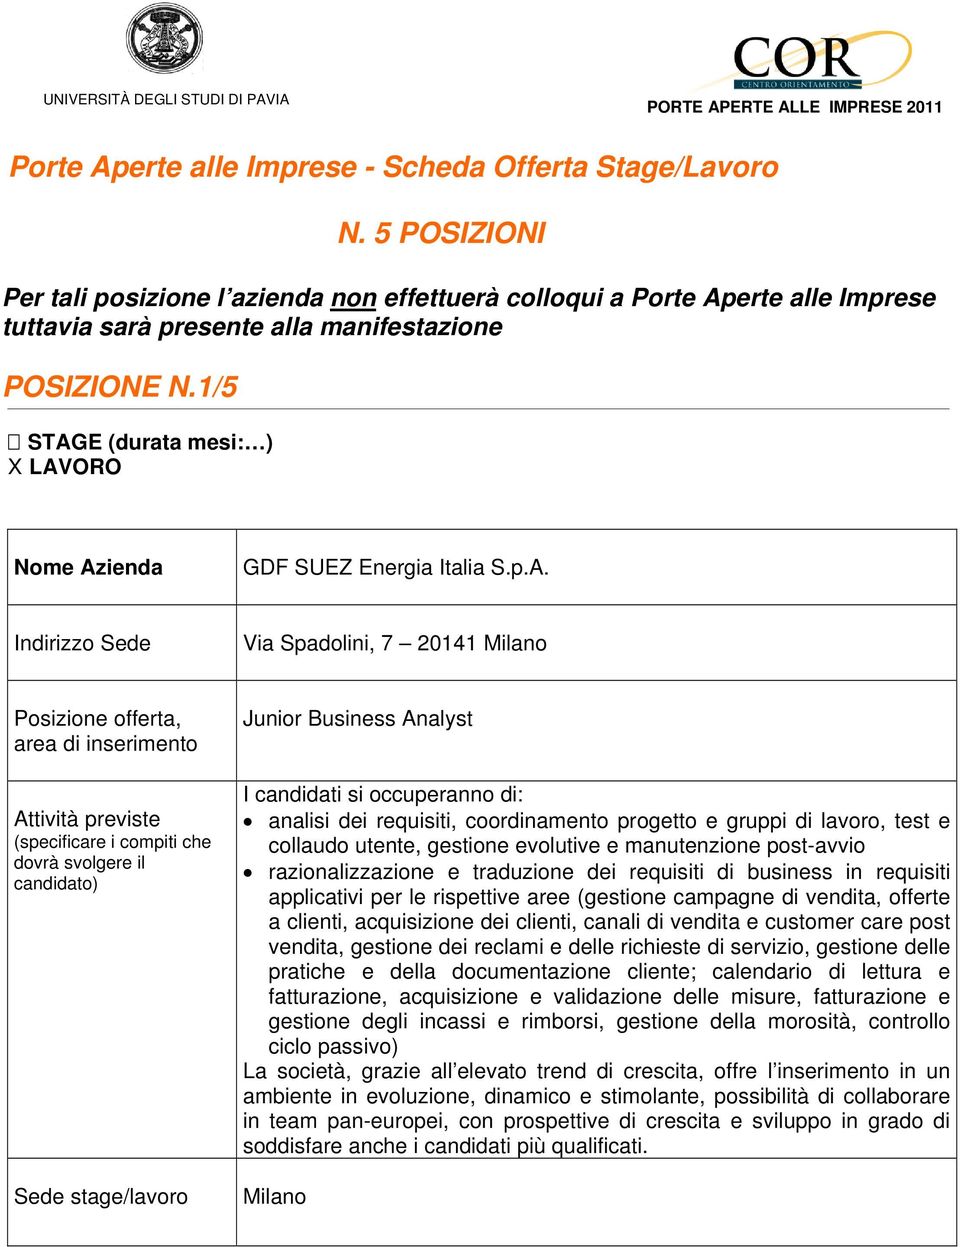 1/5 STAGE (durata mesi: ) X LAVORO Via Spadolini, 7 20141 Junior Business Analyst I candidati si occuperanno di: analisi dei requisiti, coordinamento progetto e gruppi di lavoro, test e collaudo